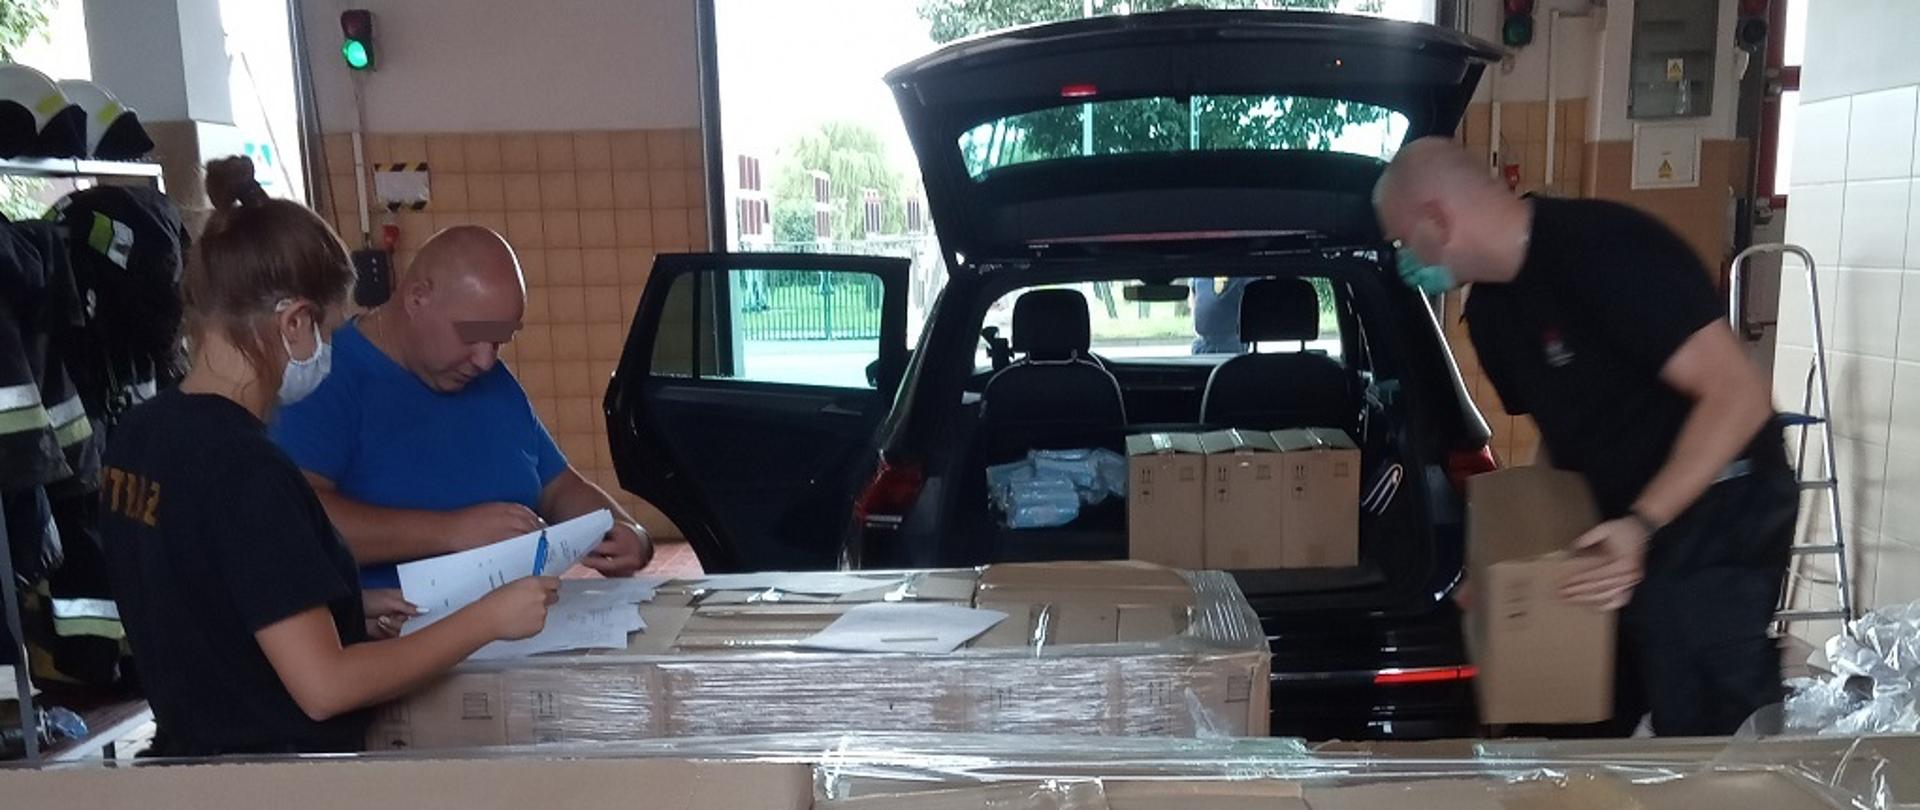 Strażacy przekazujący środki ochrony indywidualnej w kartonach z Agencji Rezerw Materiałowych dla uczniów i nauczycieli w szkołach powiatu lęborskiego.